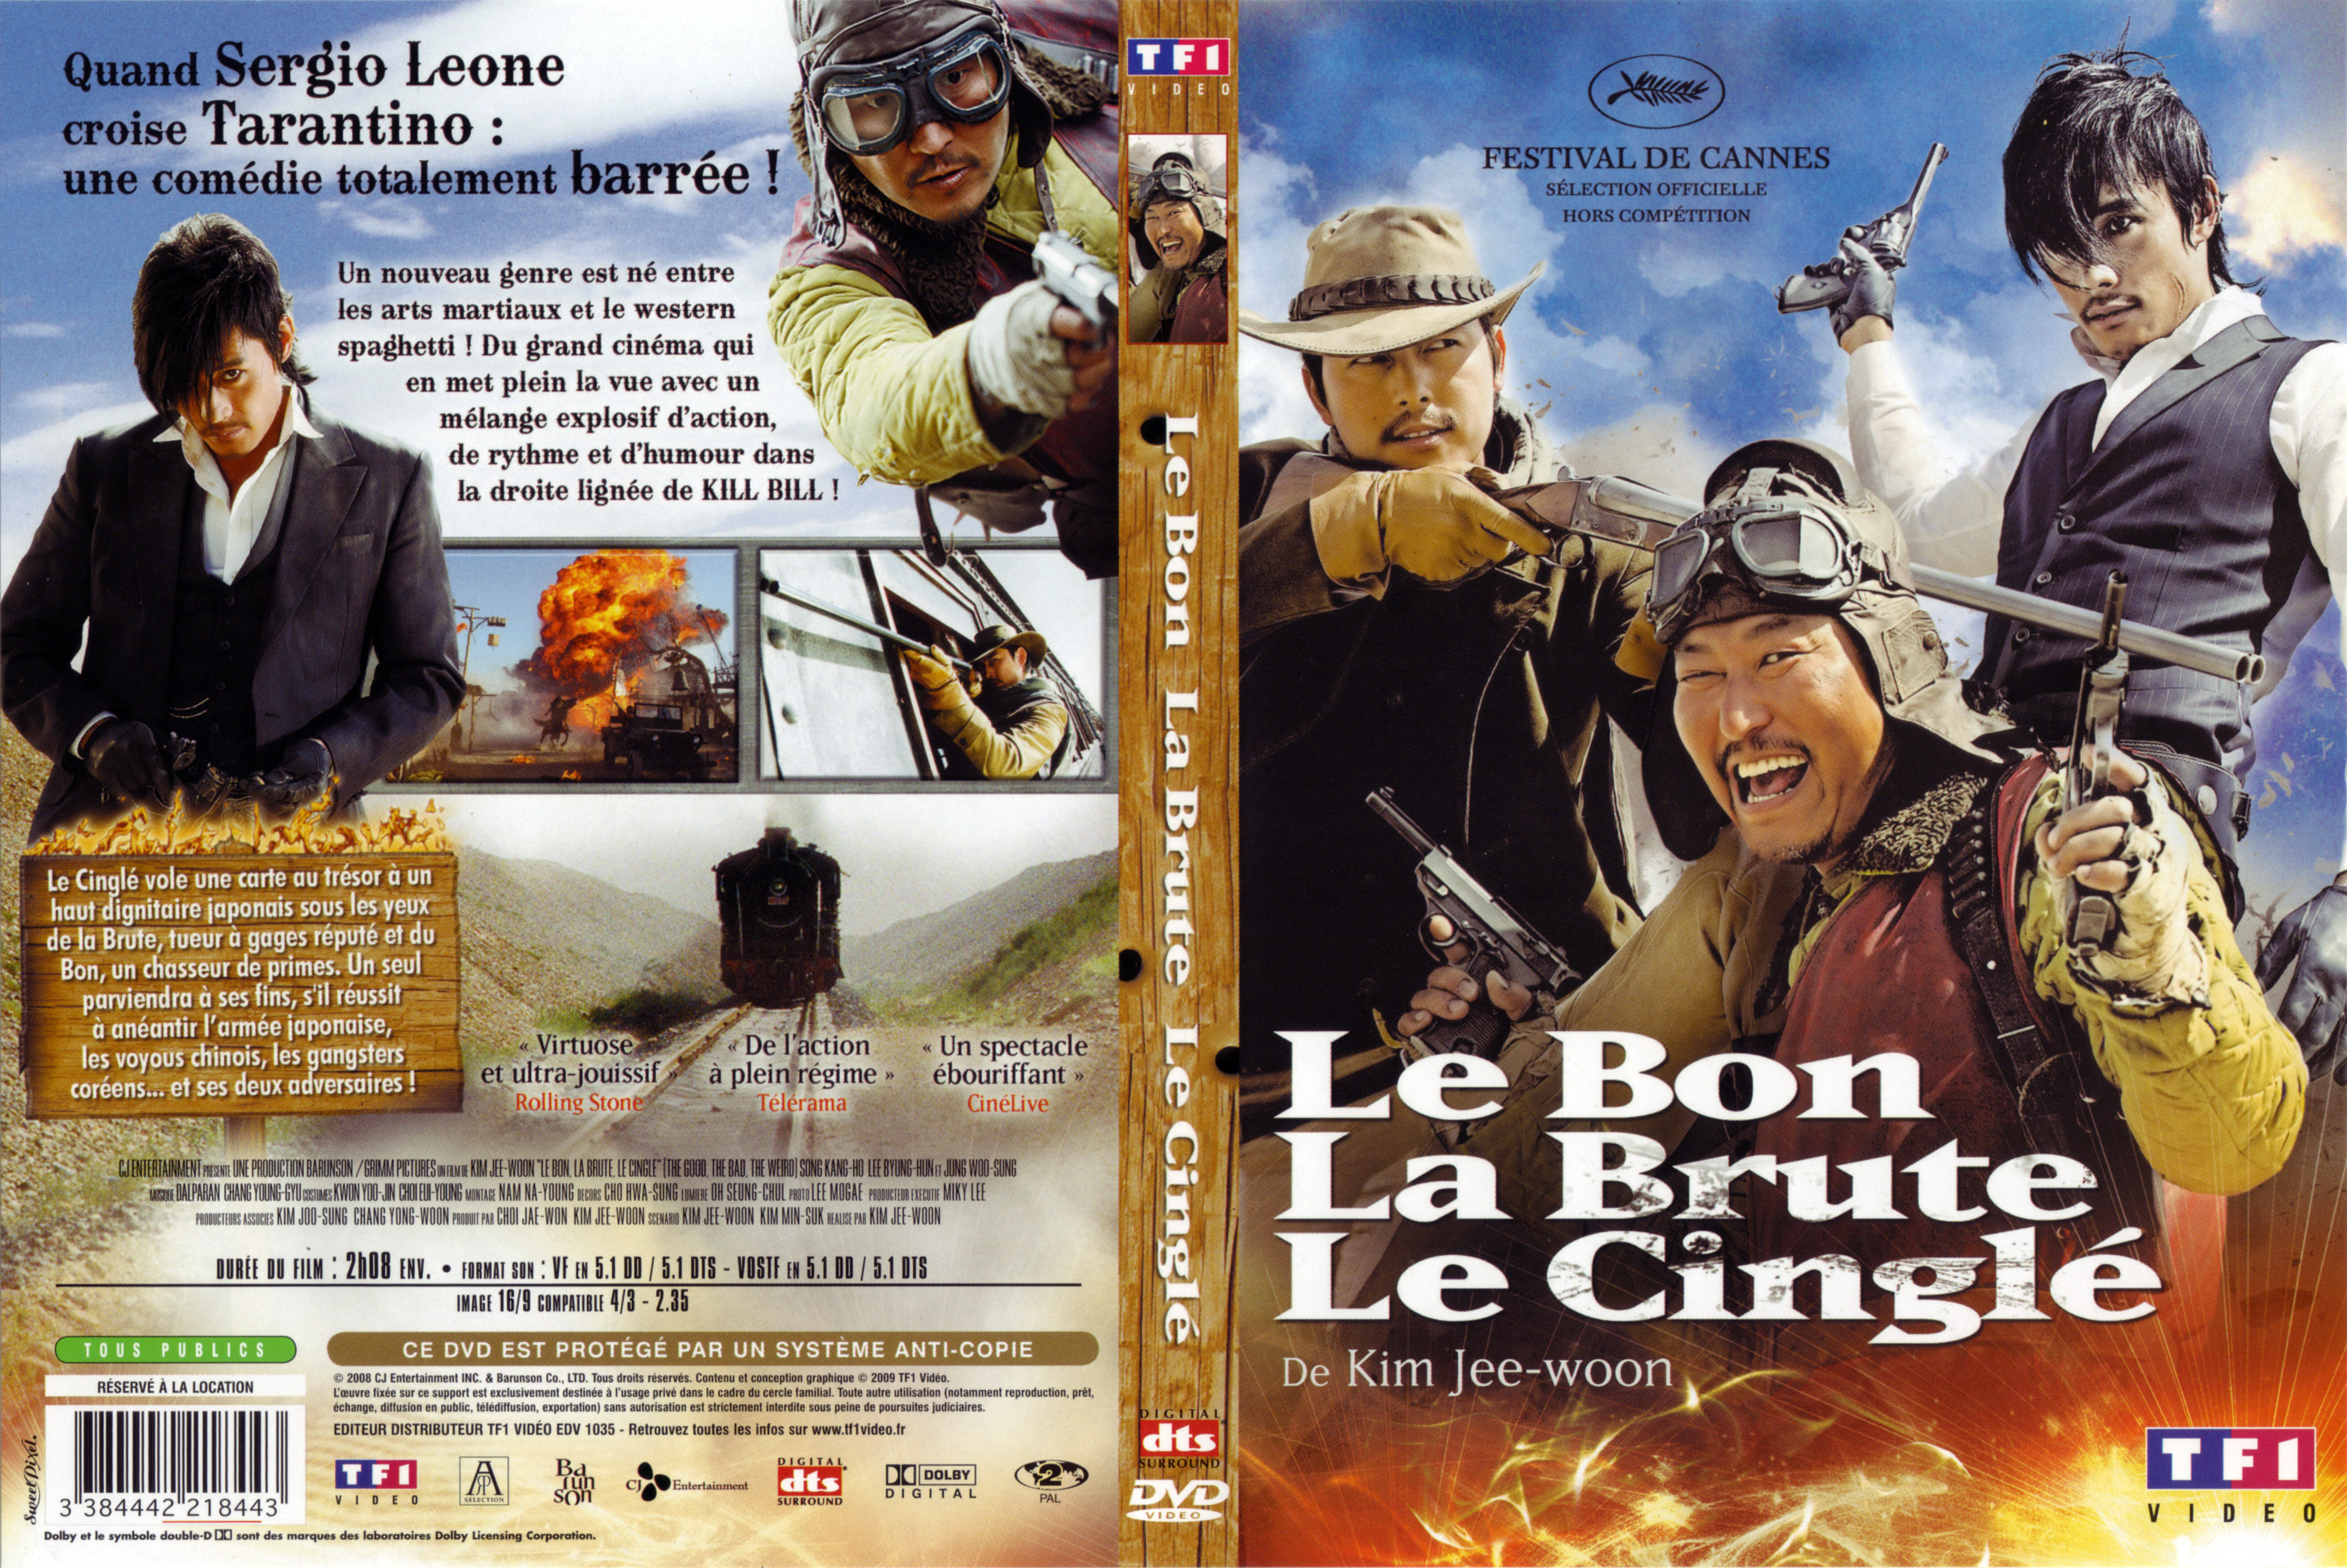 Jaquette DVD Le bon la brute le cingl v2